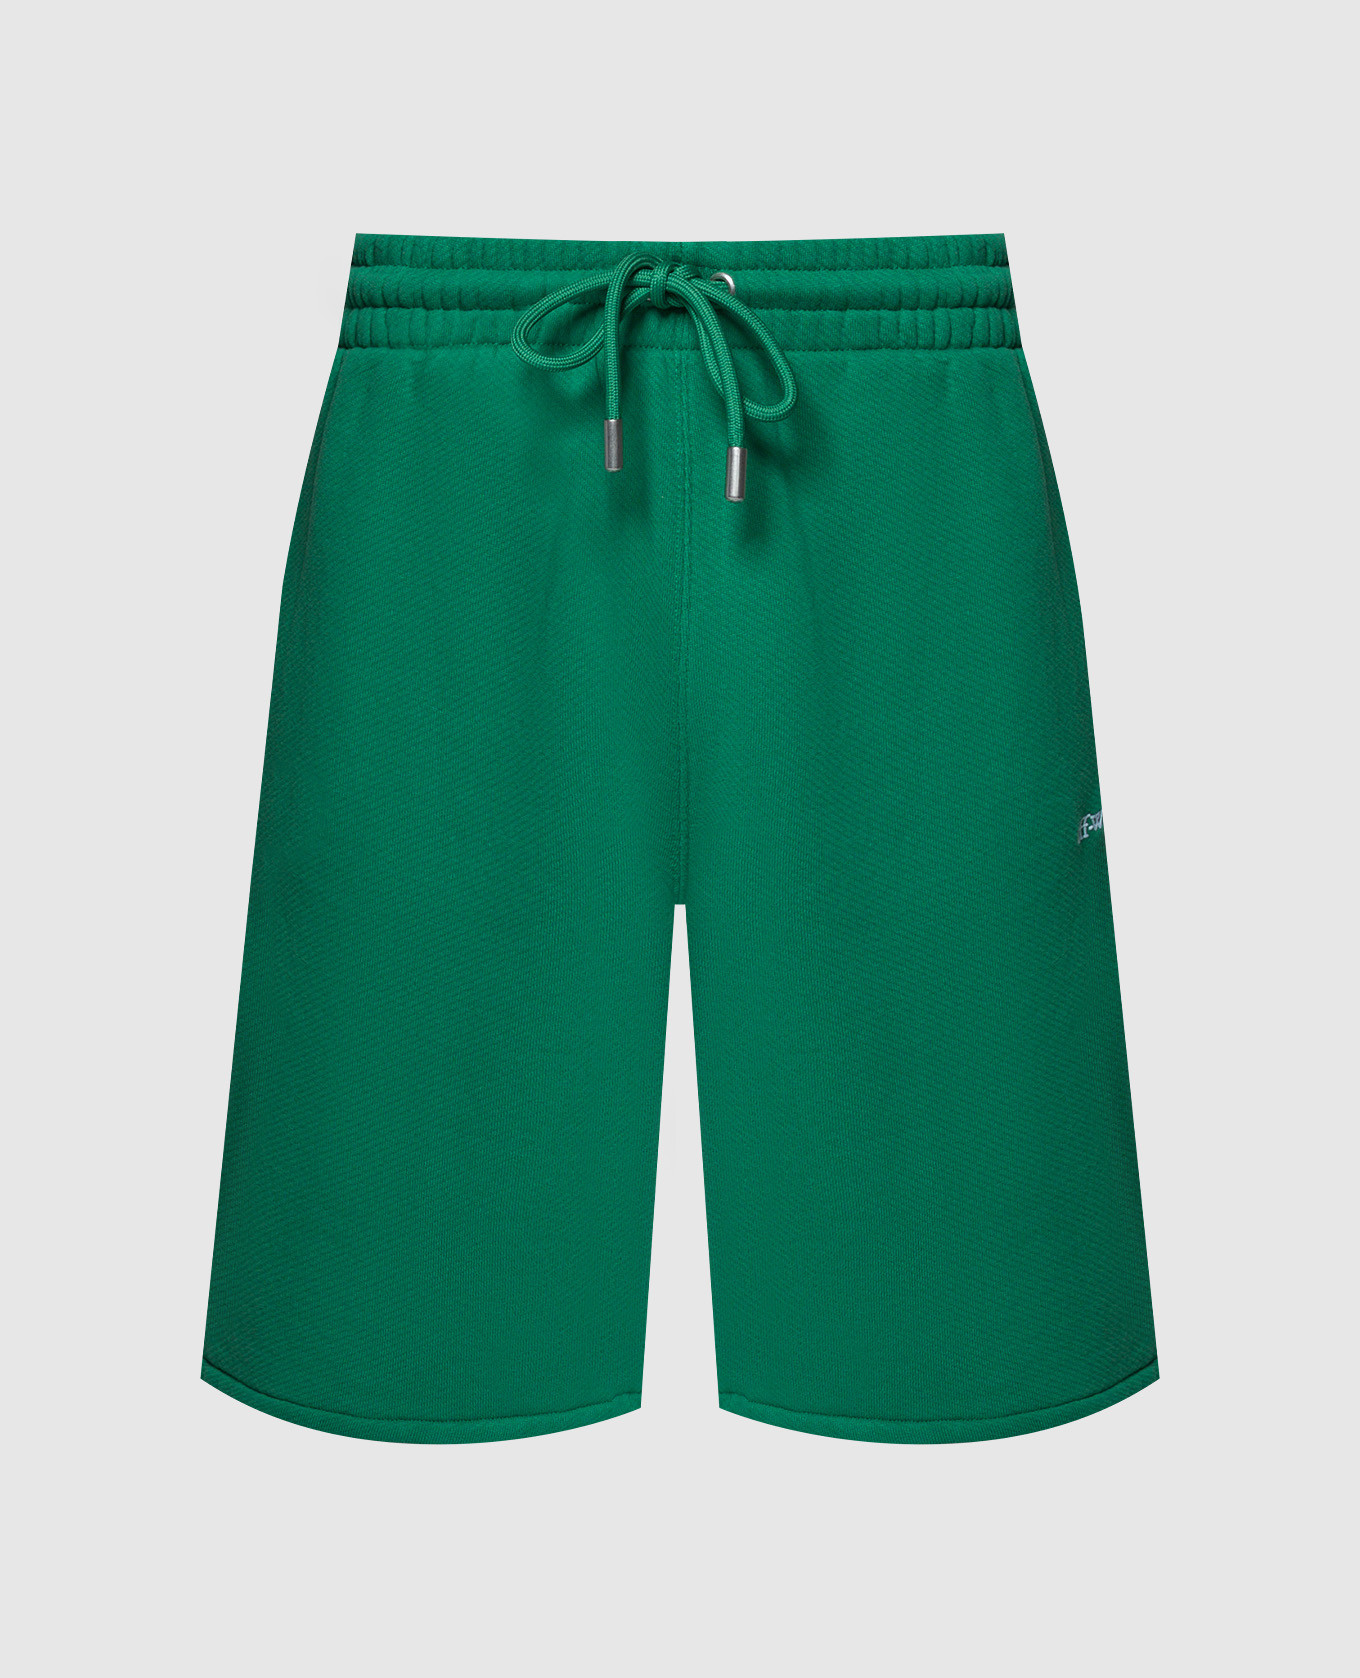 Green shorts with Bandana Arrow embroidery